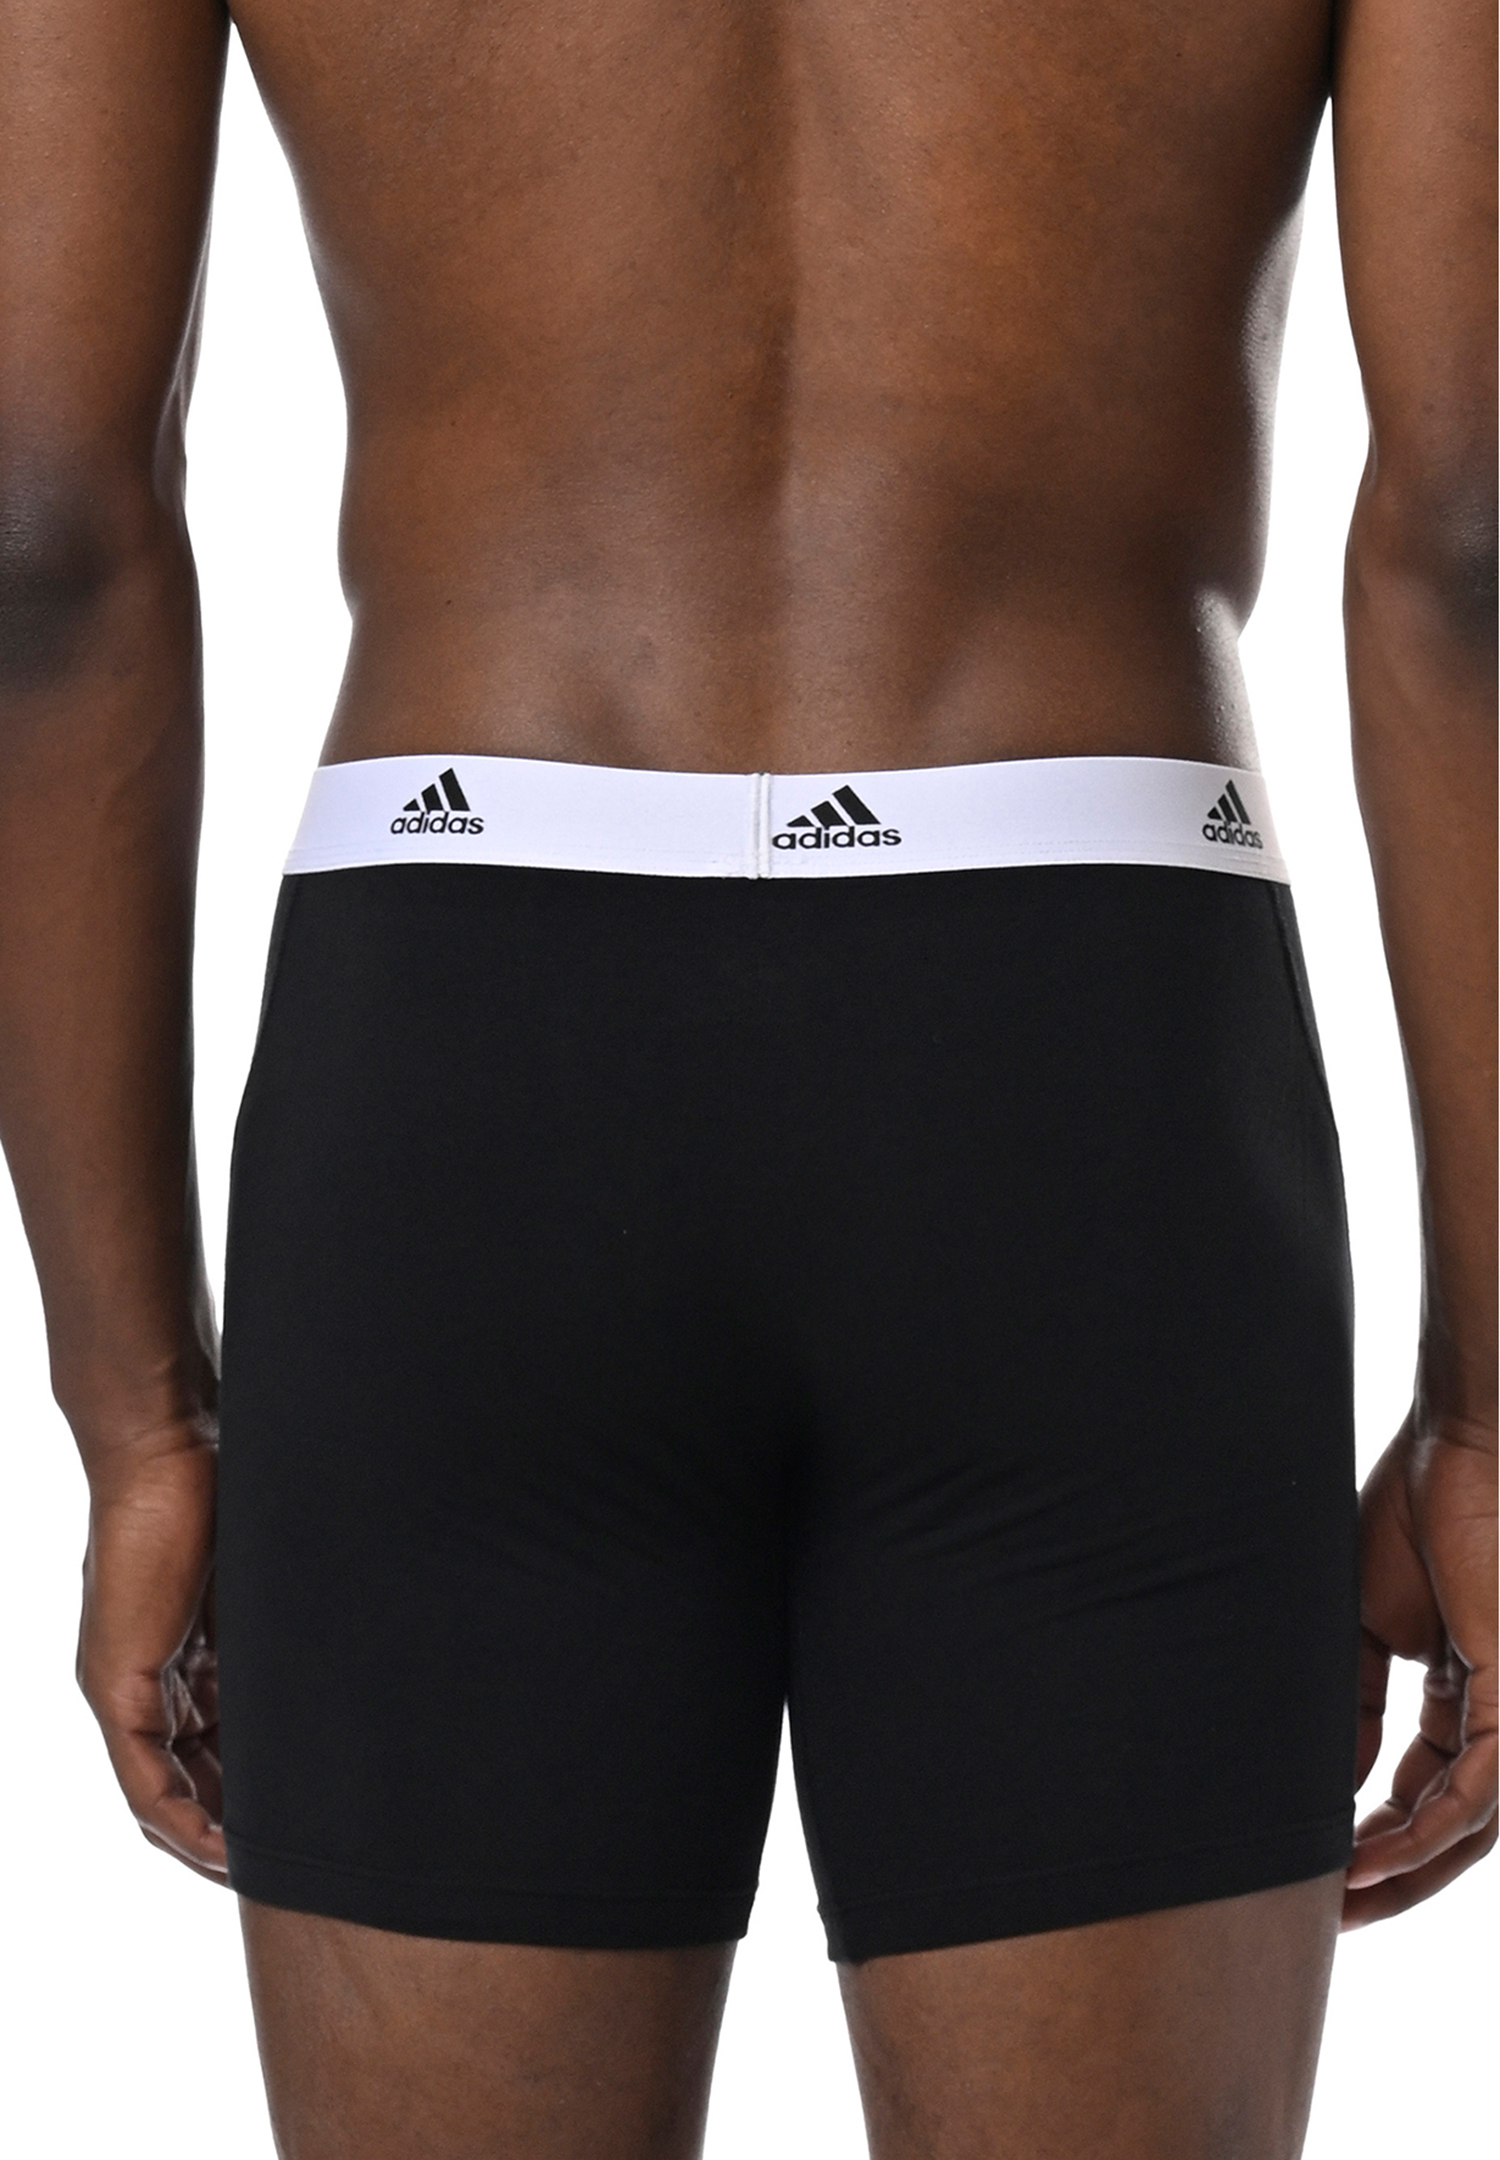 Adidas Basic Boxer Brief Men Herren Unterhose Shorts Unterwäsche 12er Pack